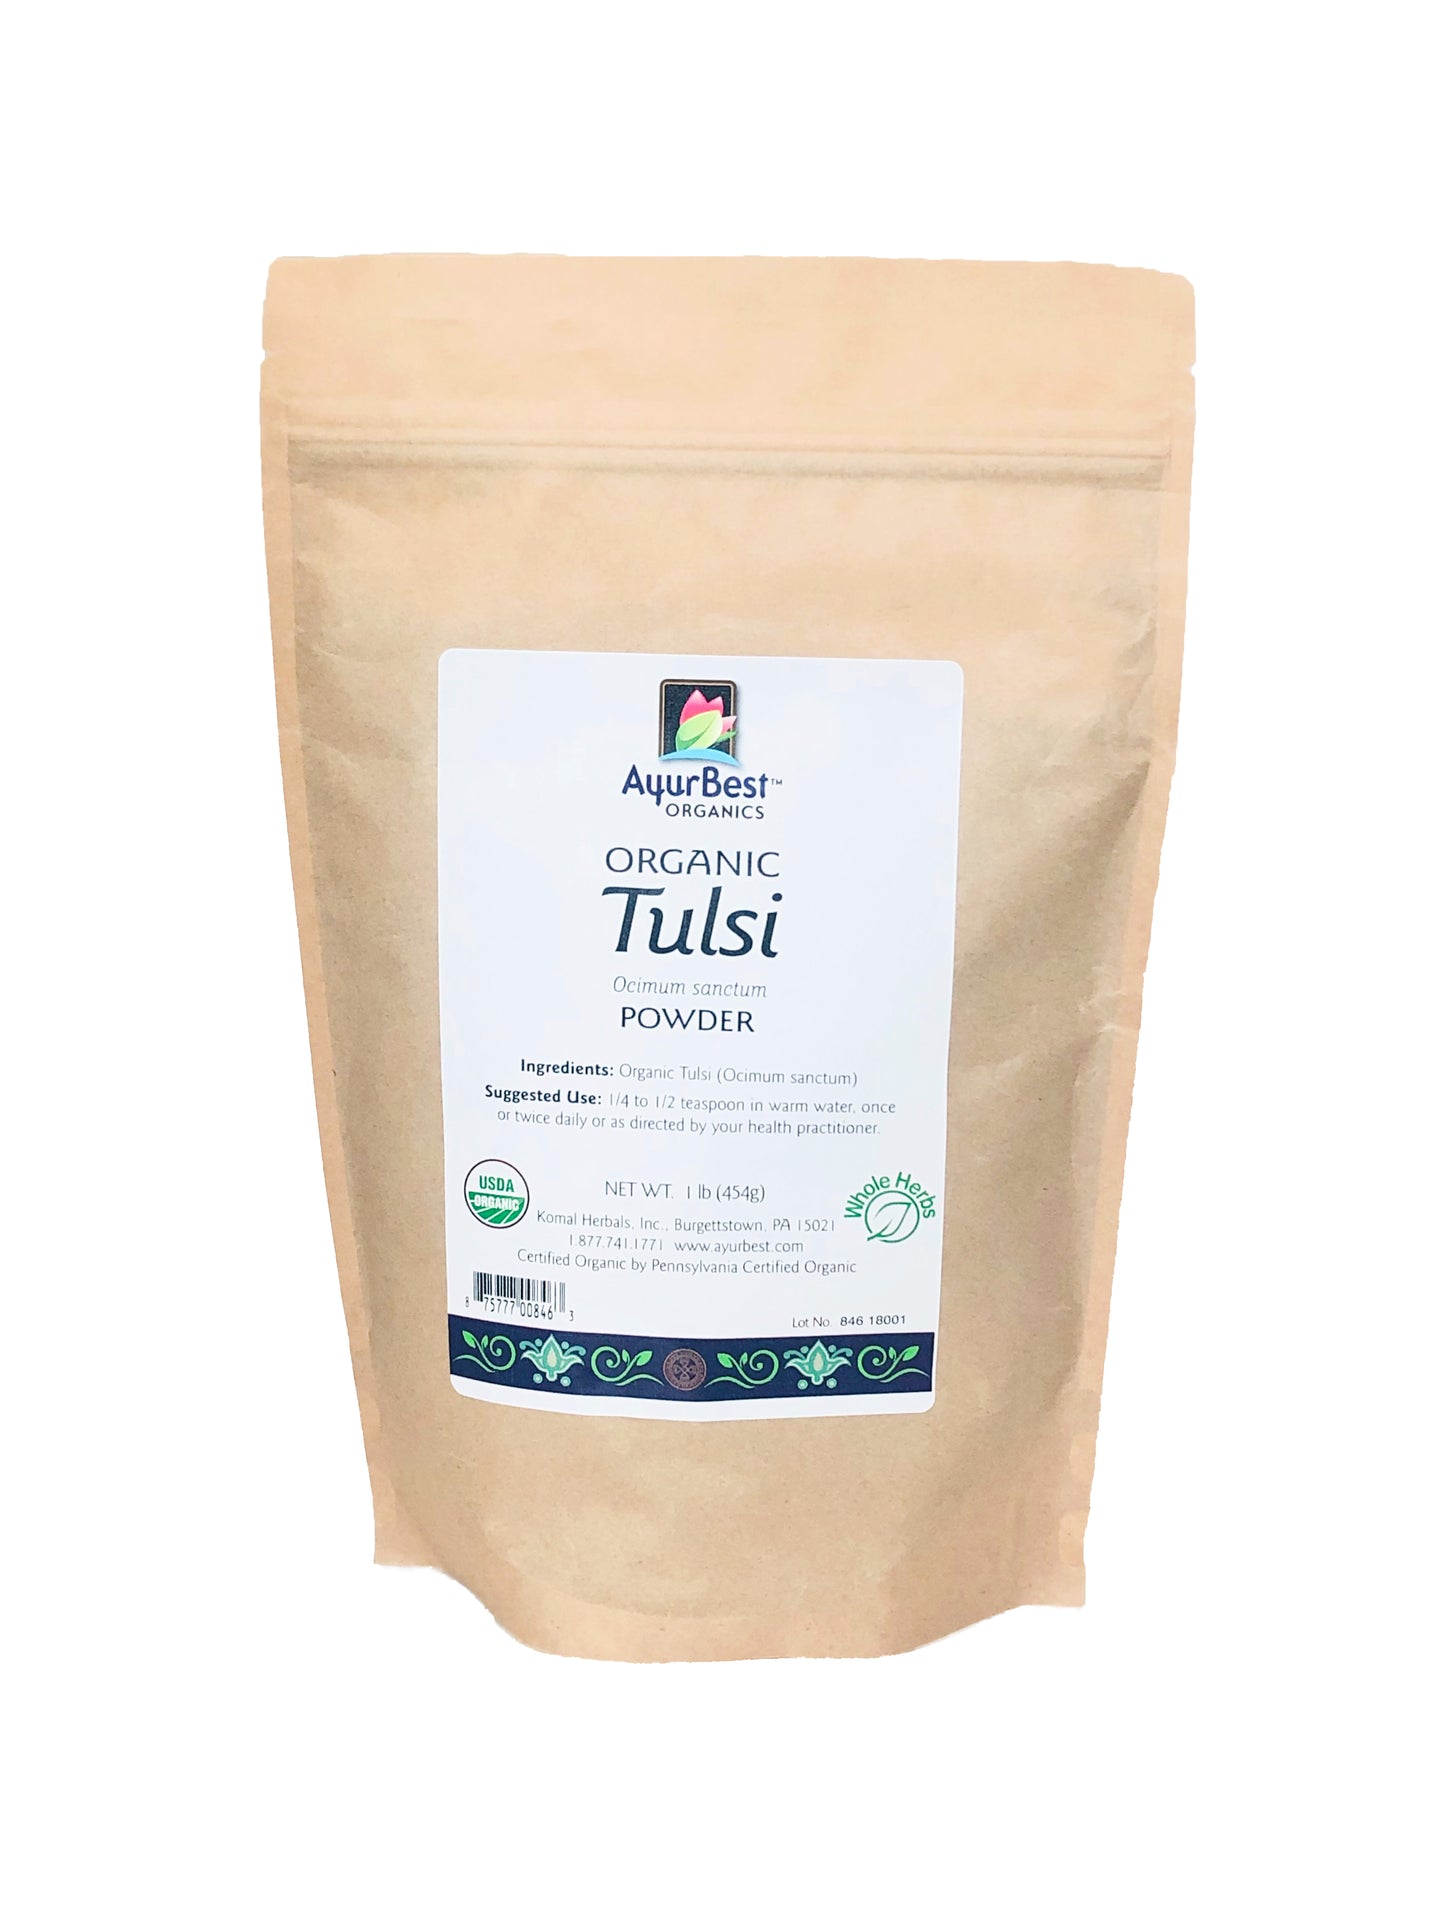 Organic Tulsi Powder